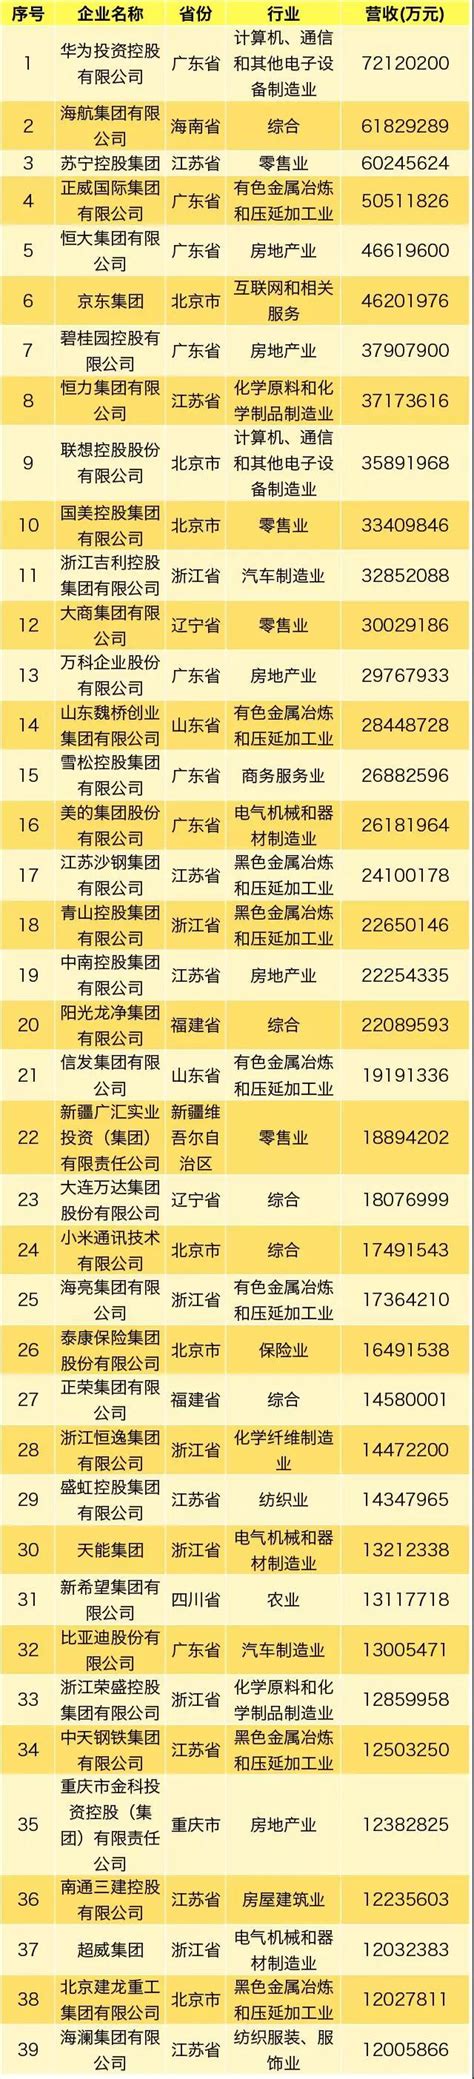 2019中国民营企业500强榜单出炉 - 红商网